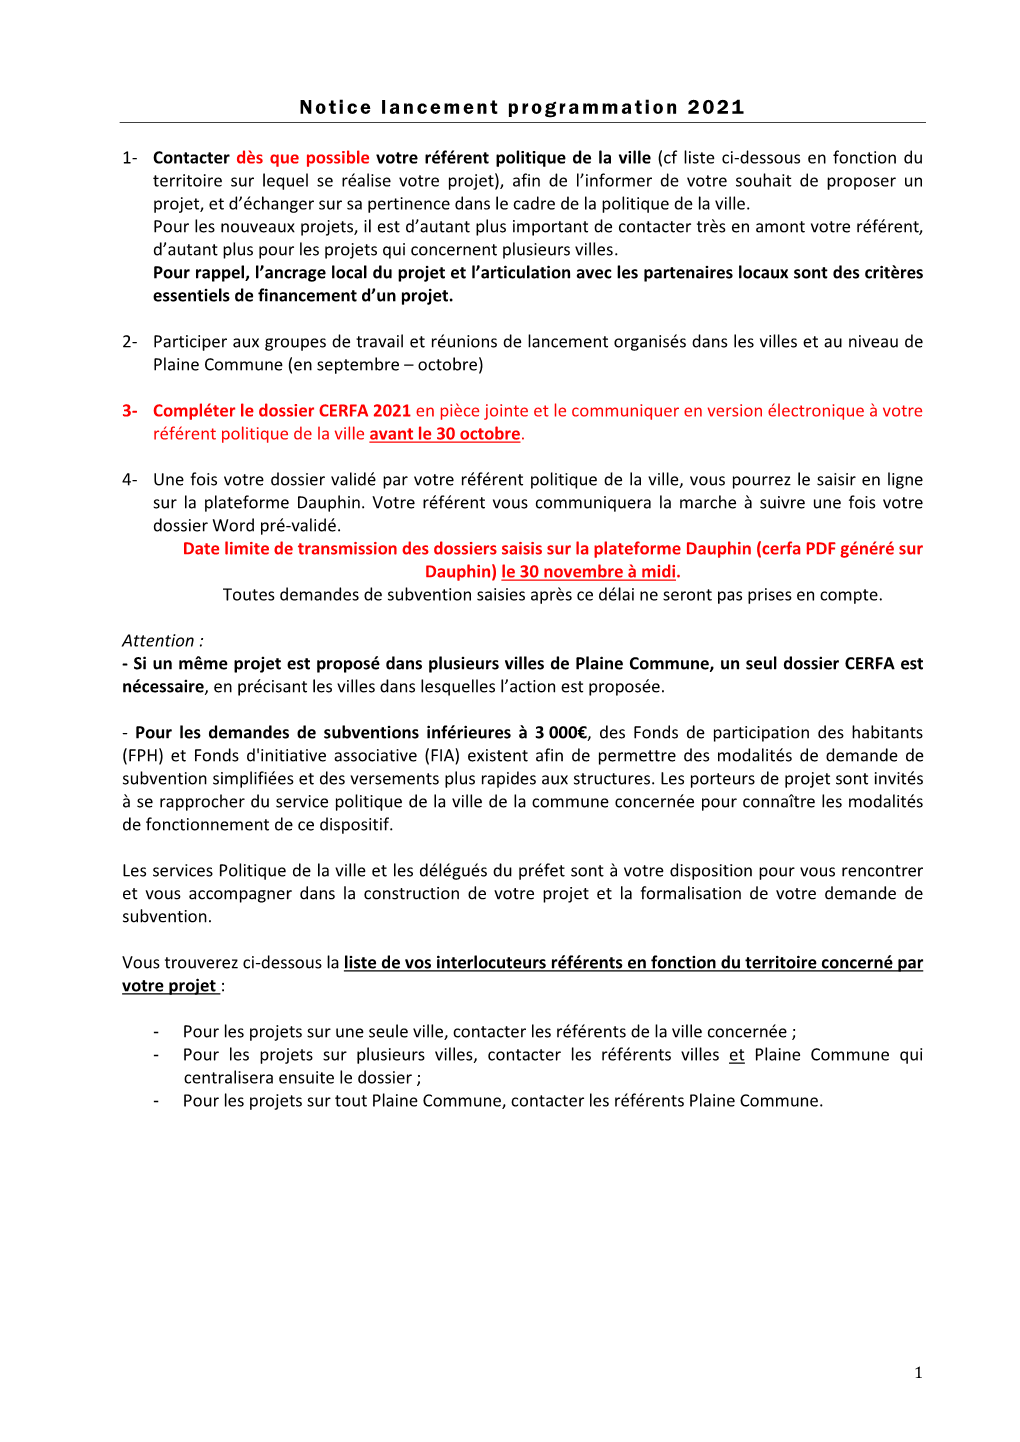 PDF Généré Sur Dauphin) Le 30 Novembre À Midi